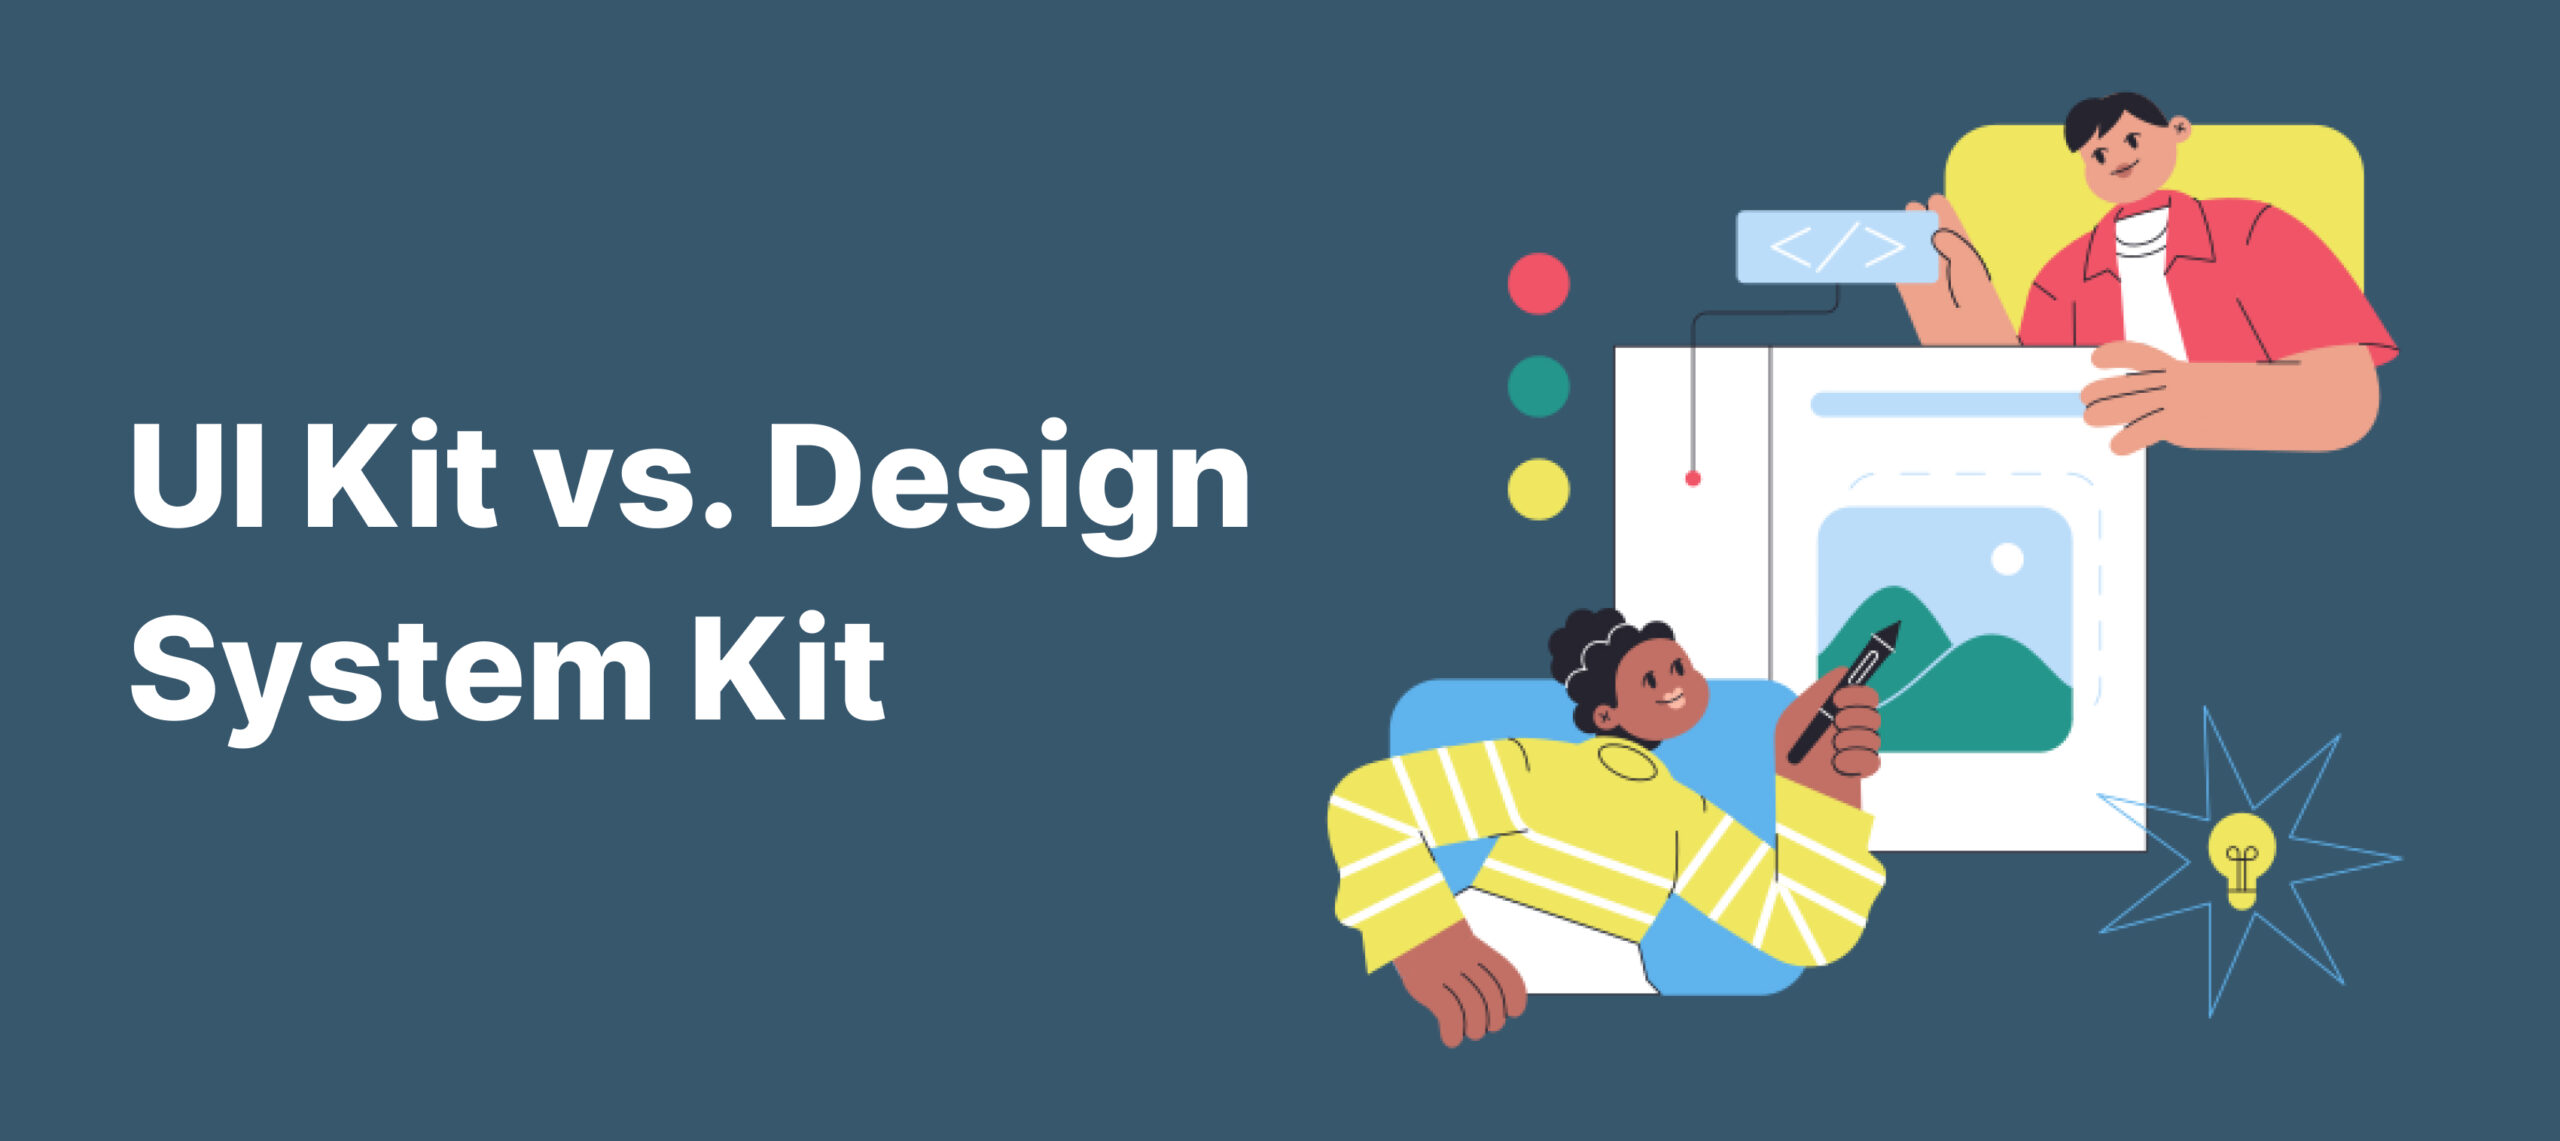  UI Kit vs. Design System Kit